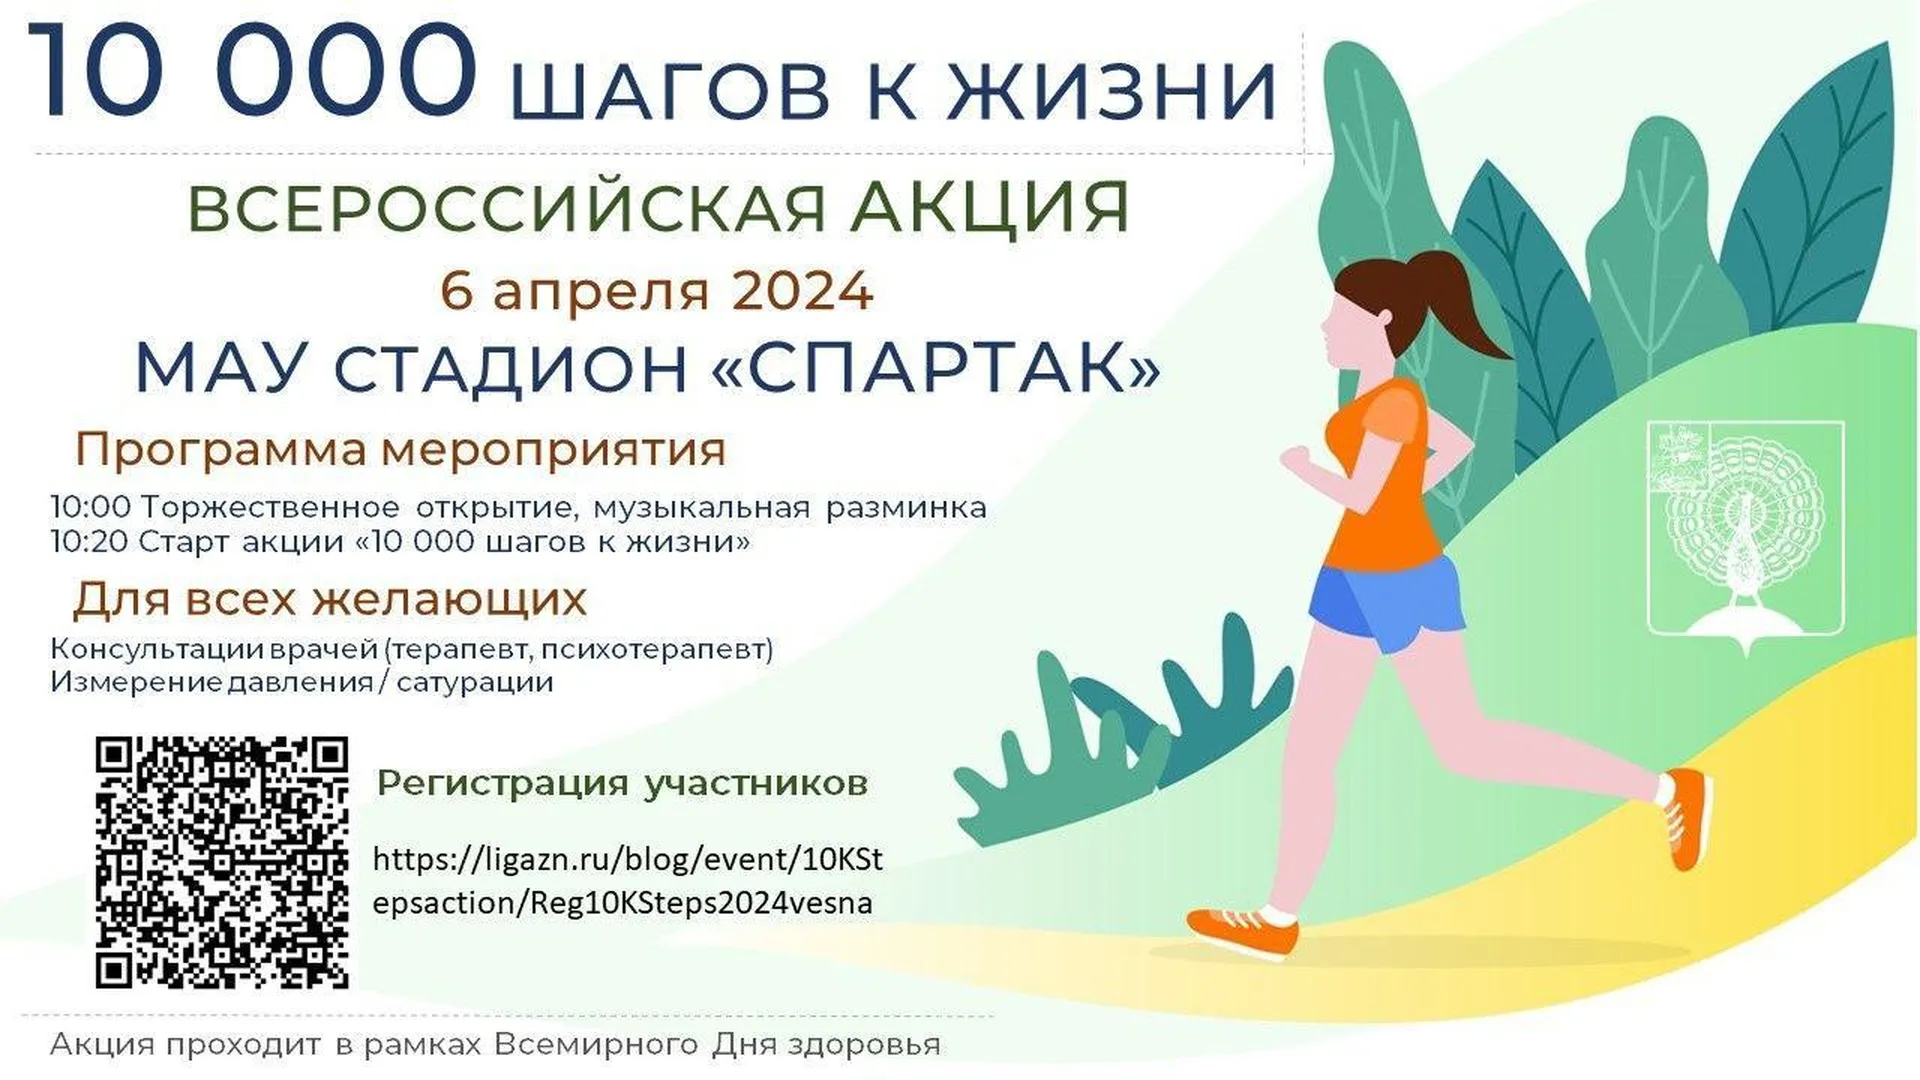 Всероссийская акция «10 000 шагов к жизни» пройдет в Серпухове 6 апреля